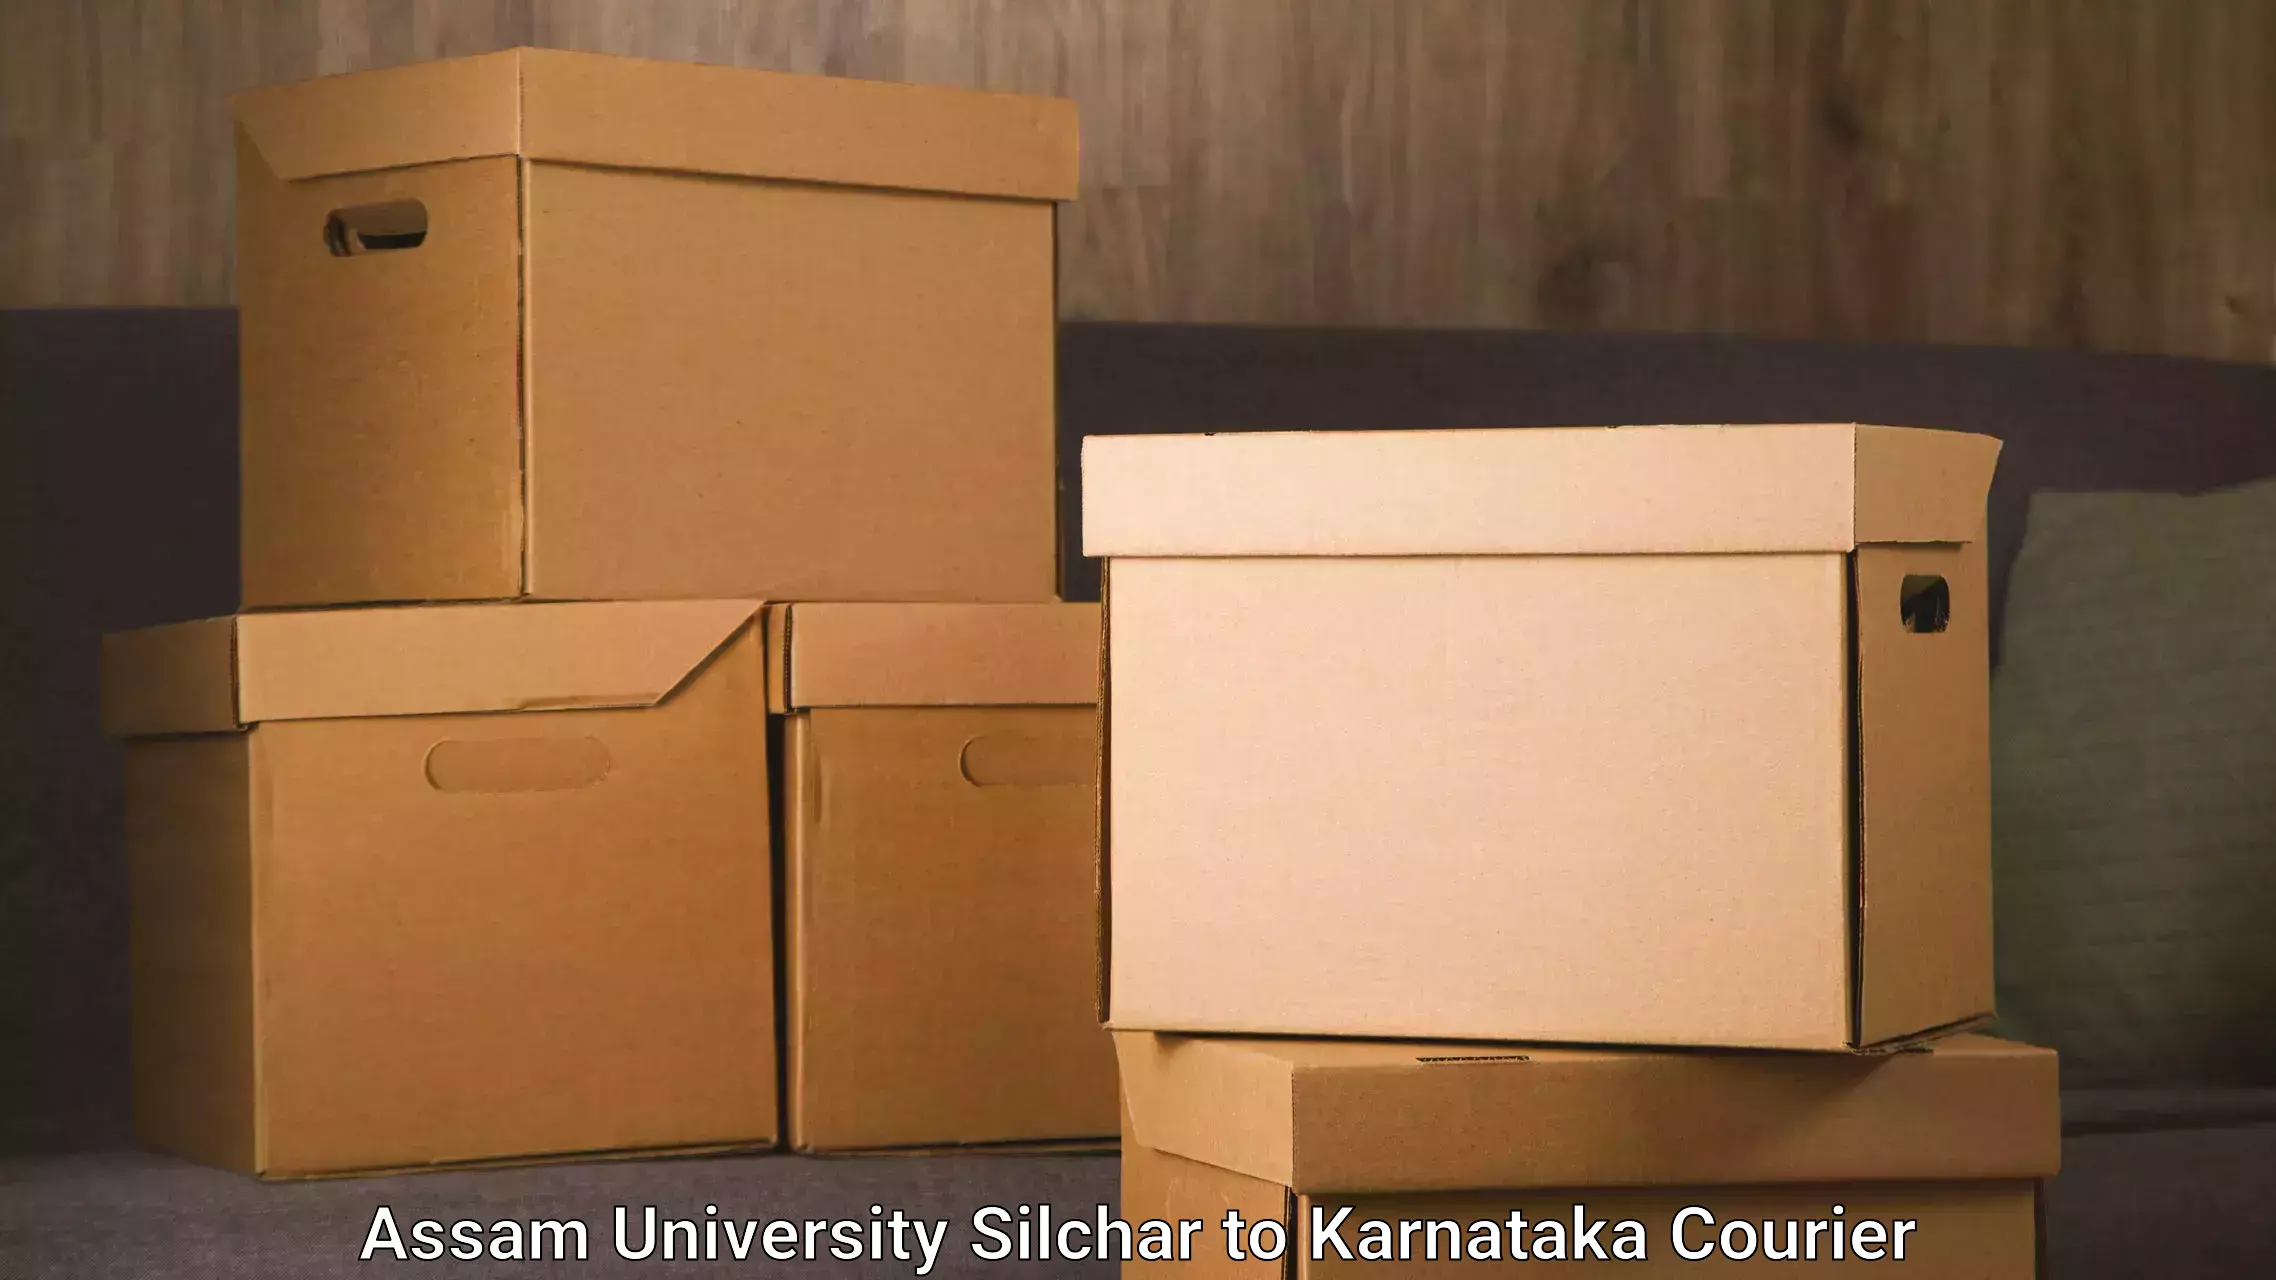 Cargo delivery service Assam University Silchar to Kuvempu University Shimoga